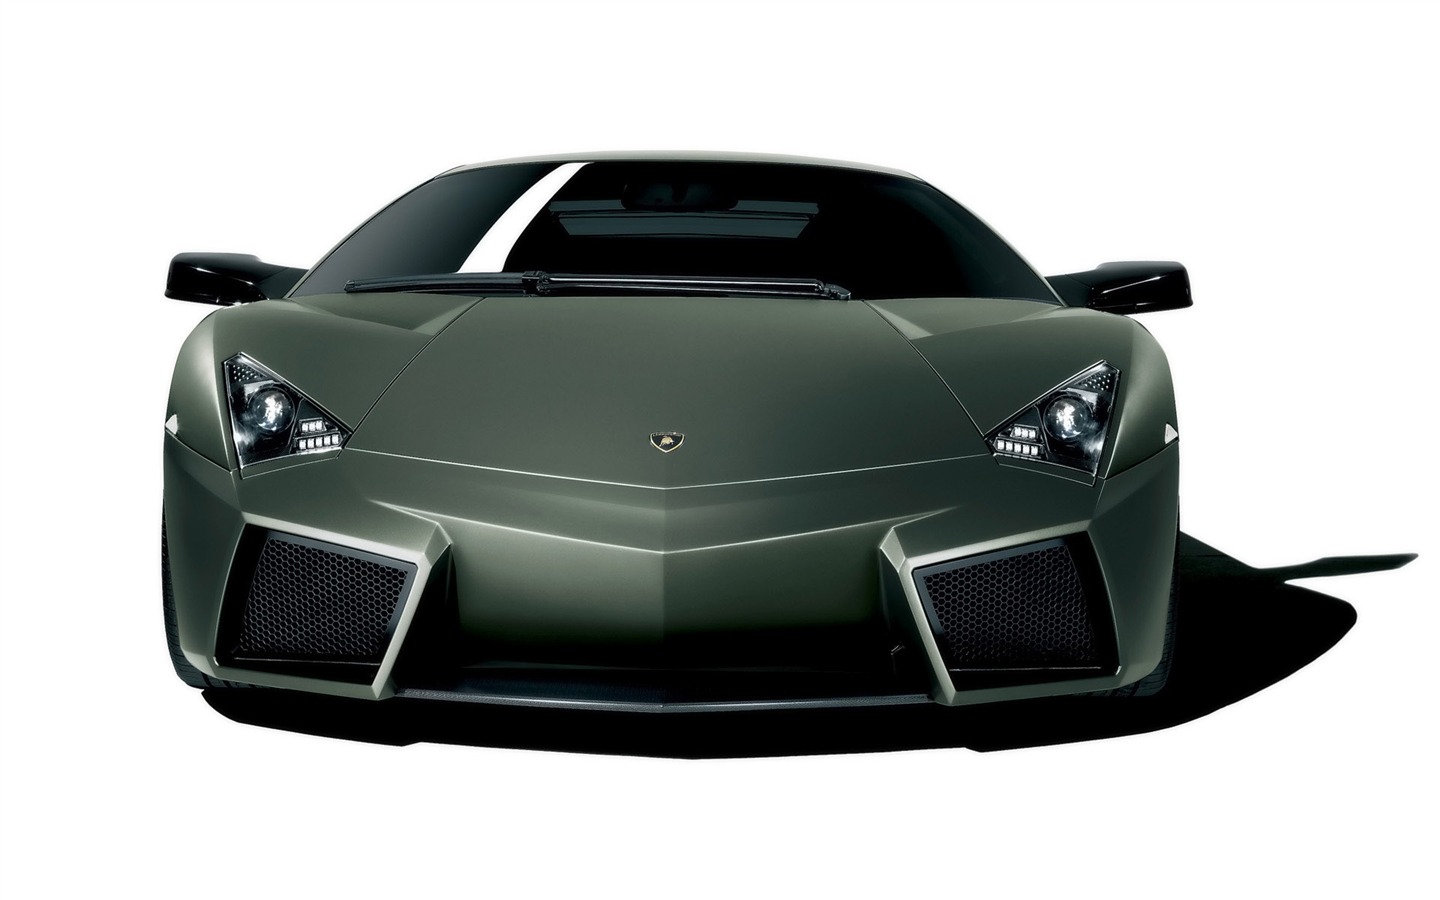 Cool fond d'écran Lamborghini Voiture #6 - 1440x900